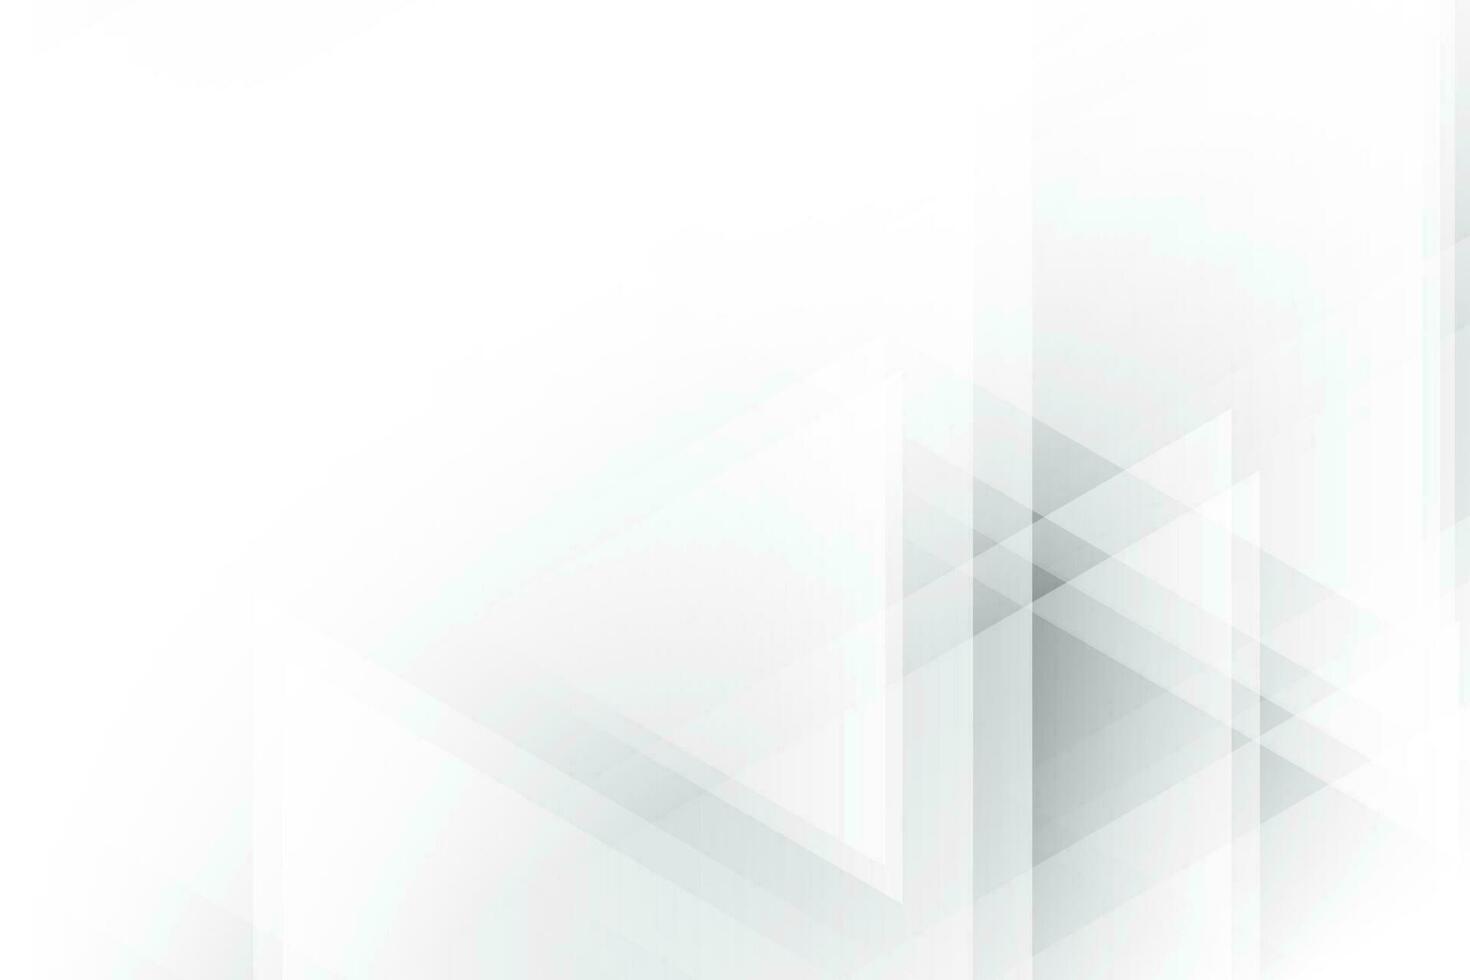 abstrakt vit och grå Färg, modern design bakgrund med geometrisk triangel form. vektor illustration.